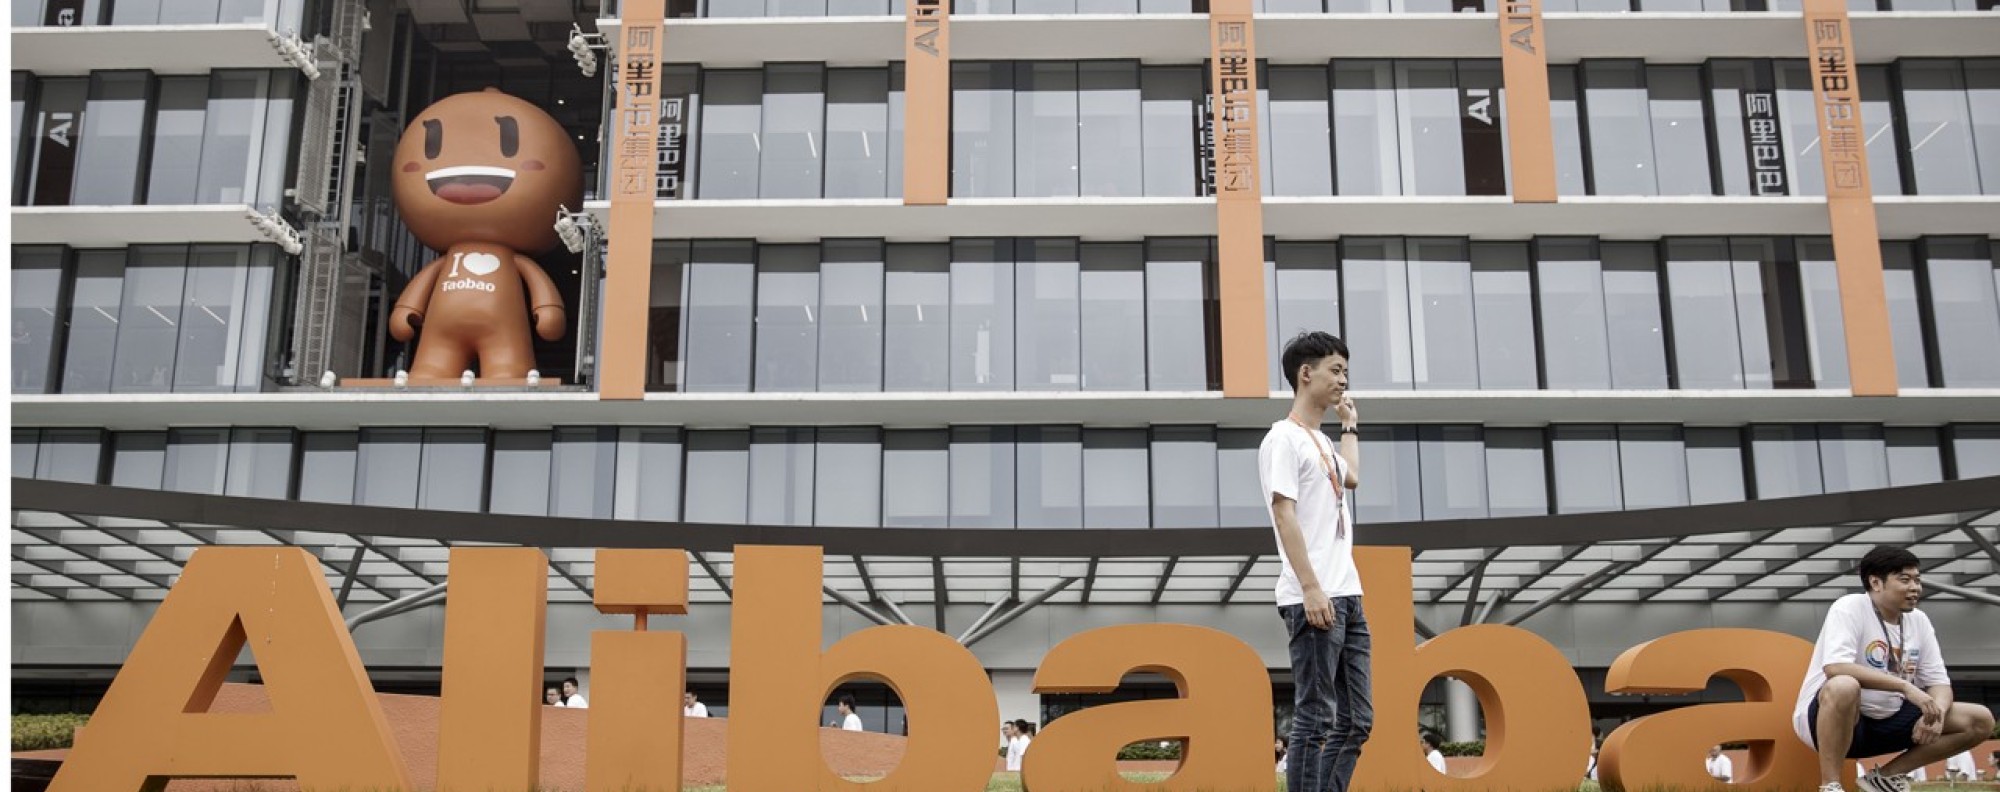 NBA and Alibaba Expand China Partnership